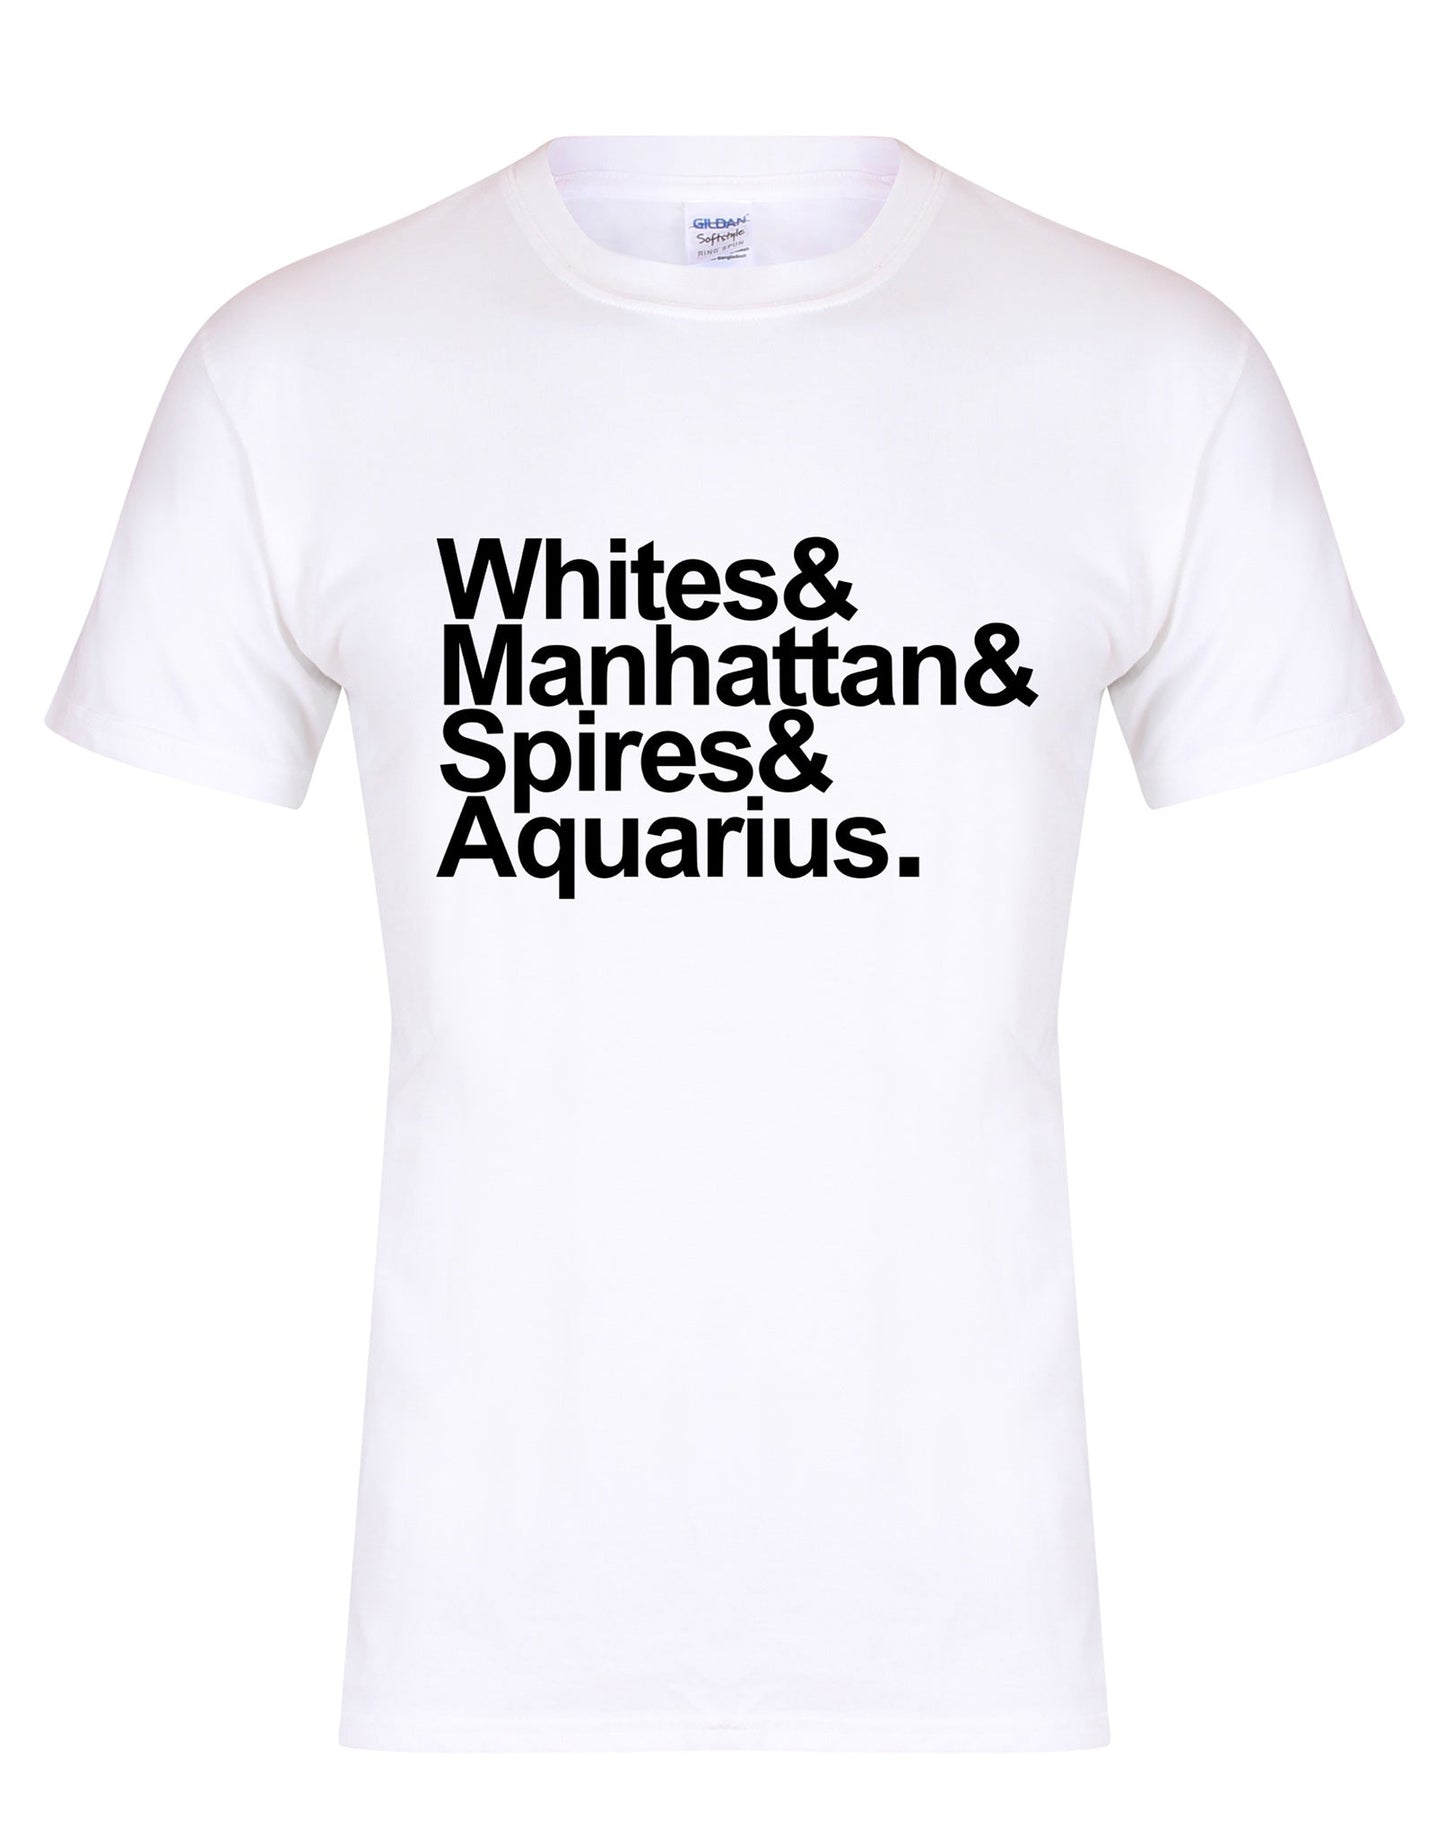 Destination Aquarius unisex fit T-shirt - various colours - Dirty Stop Outs